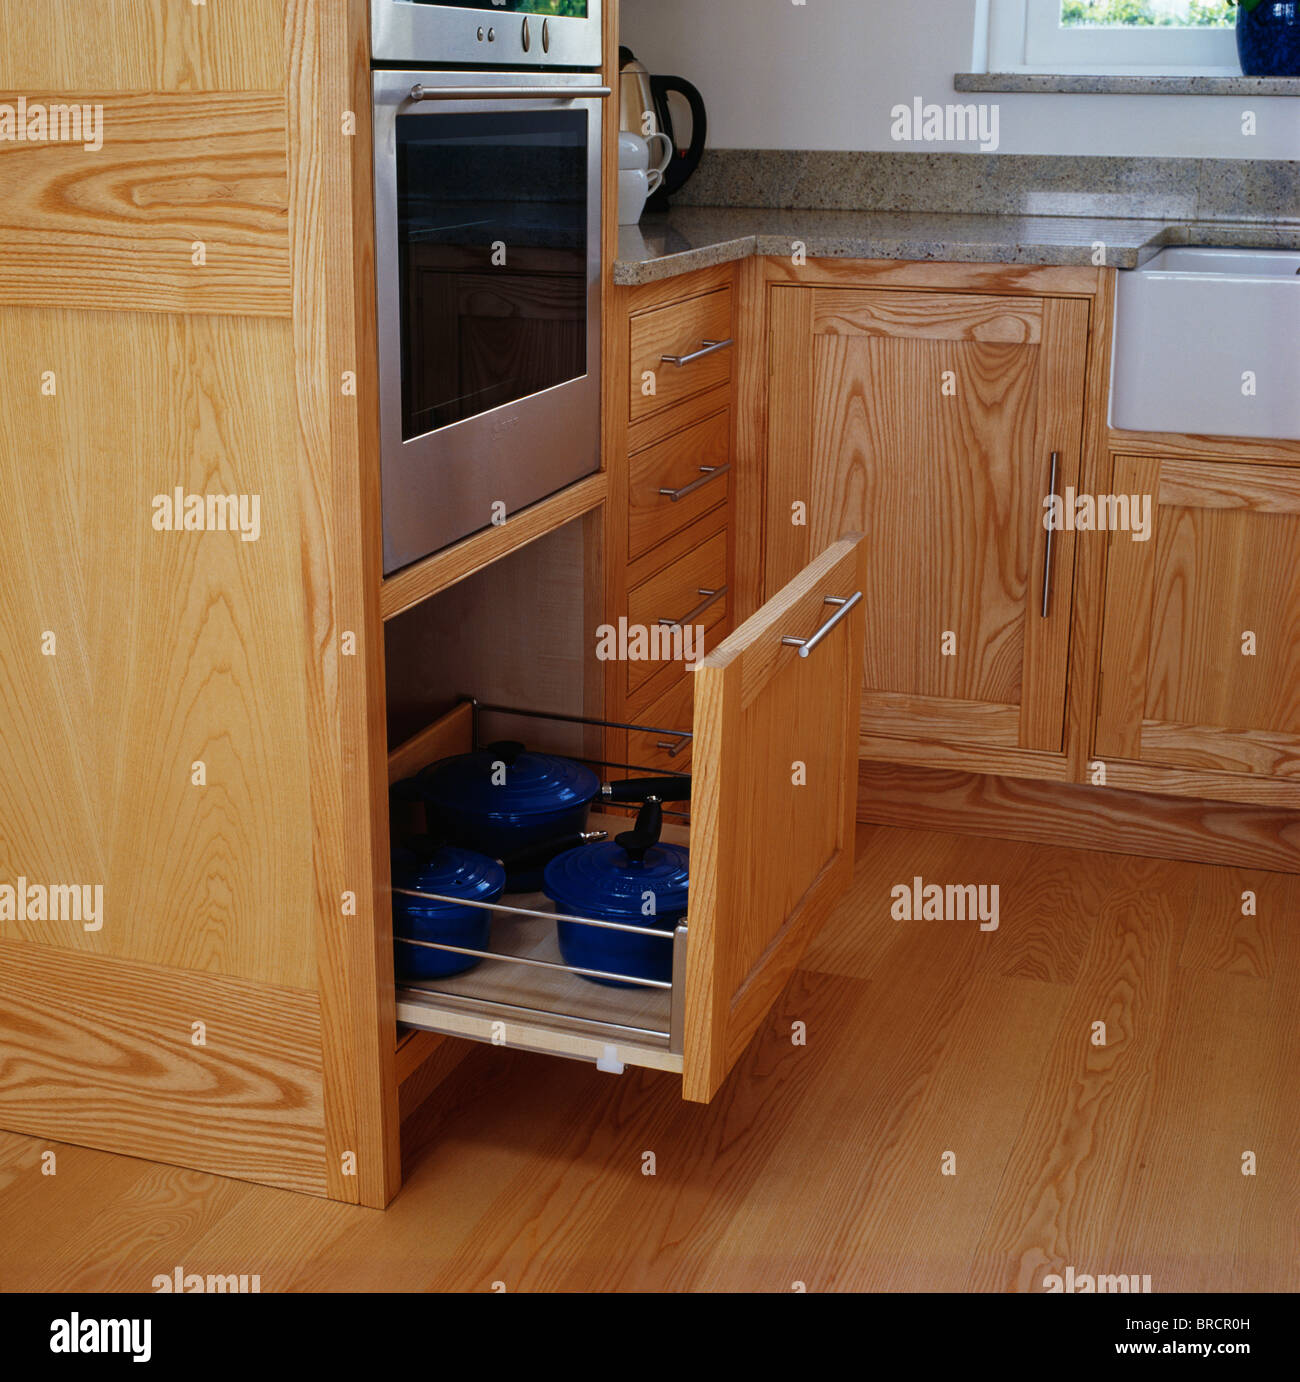 Nahaufnahme des offenen Topf Schublade unter Backofen in hellen Holz Küche  Stockfotografie - Alamy